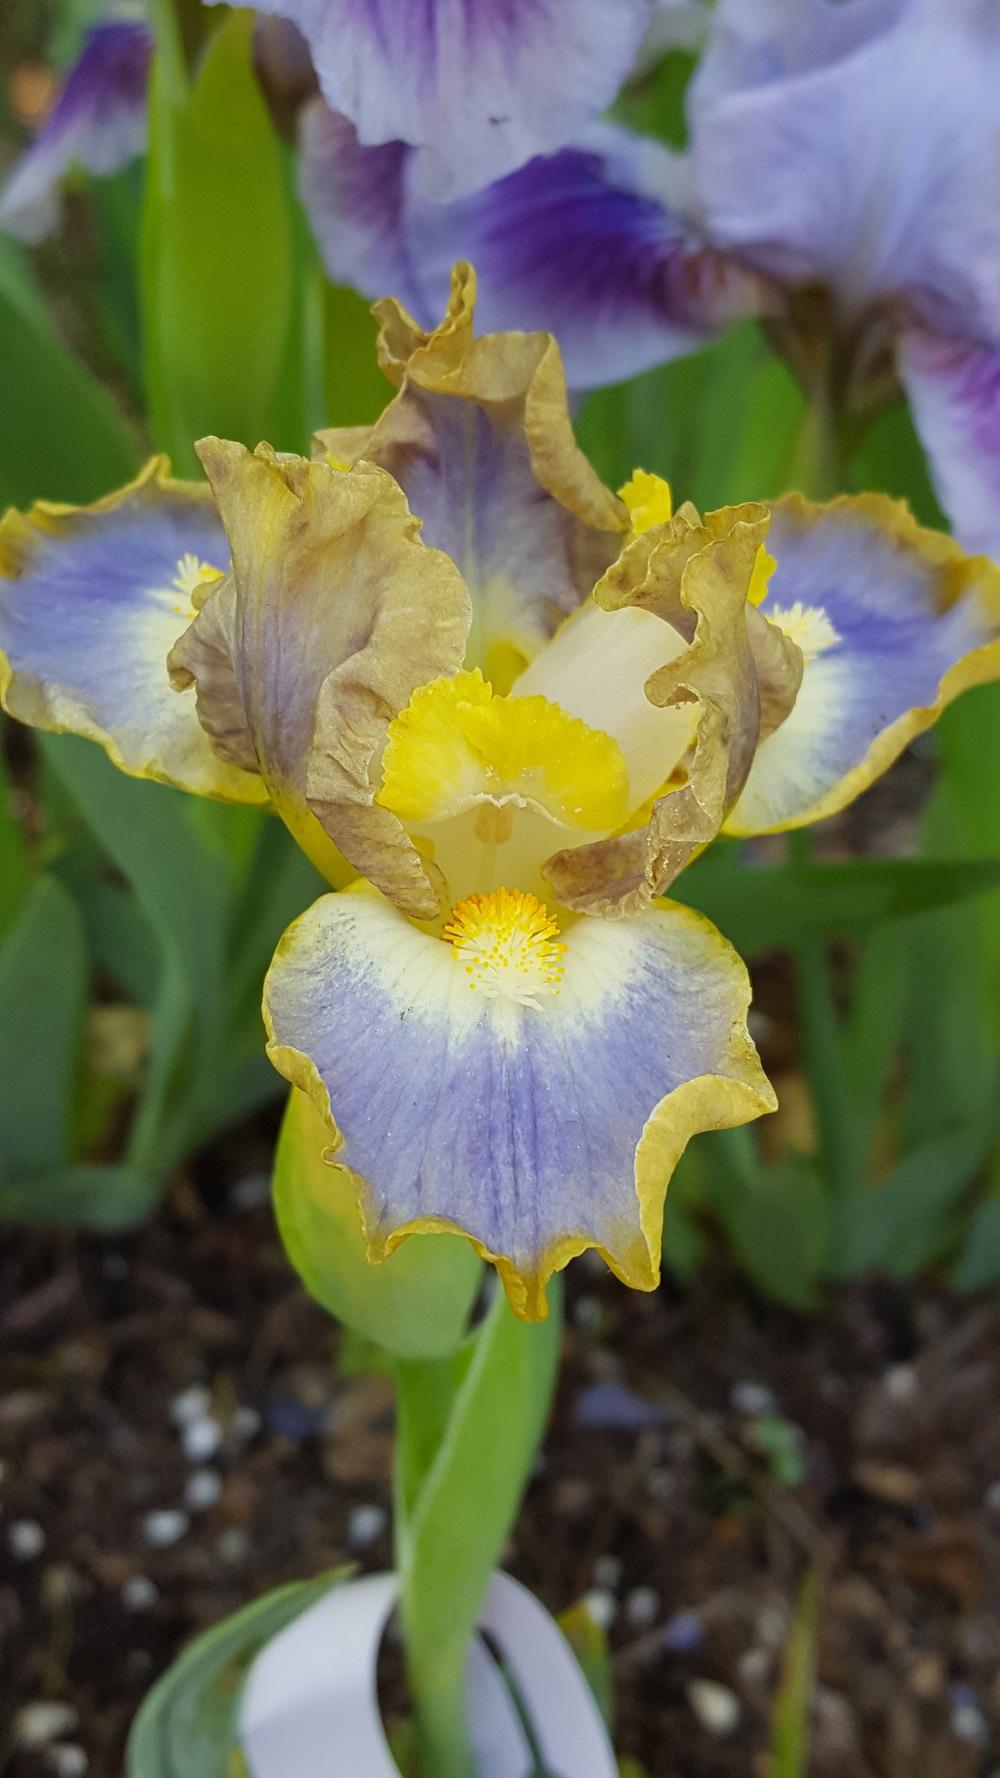 Photo of Standard Dwarf Bearded Iris (Iris 'My Cher') uploaded by Dachsylady86